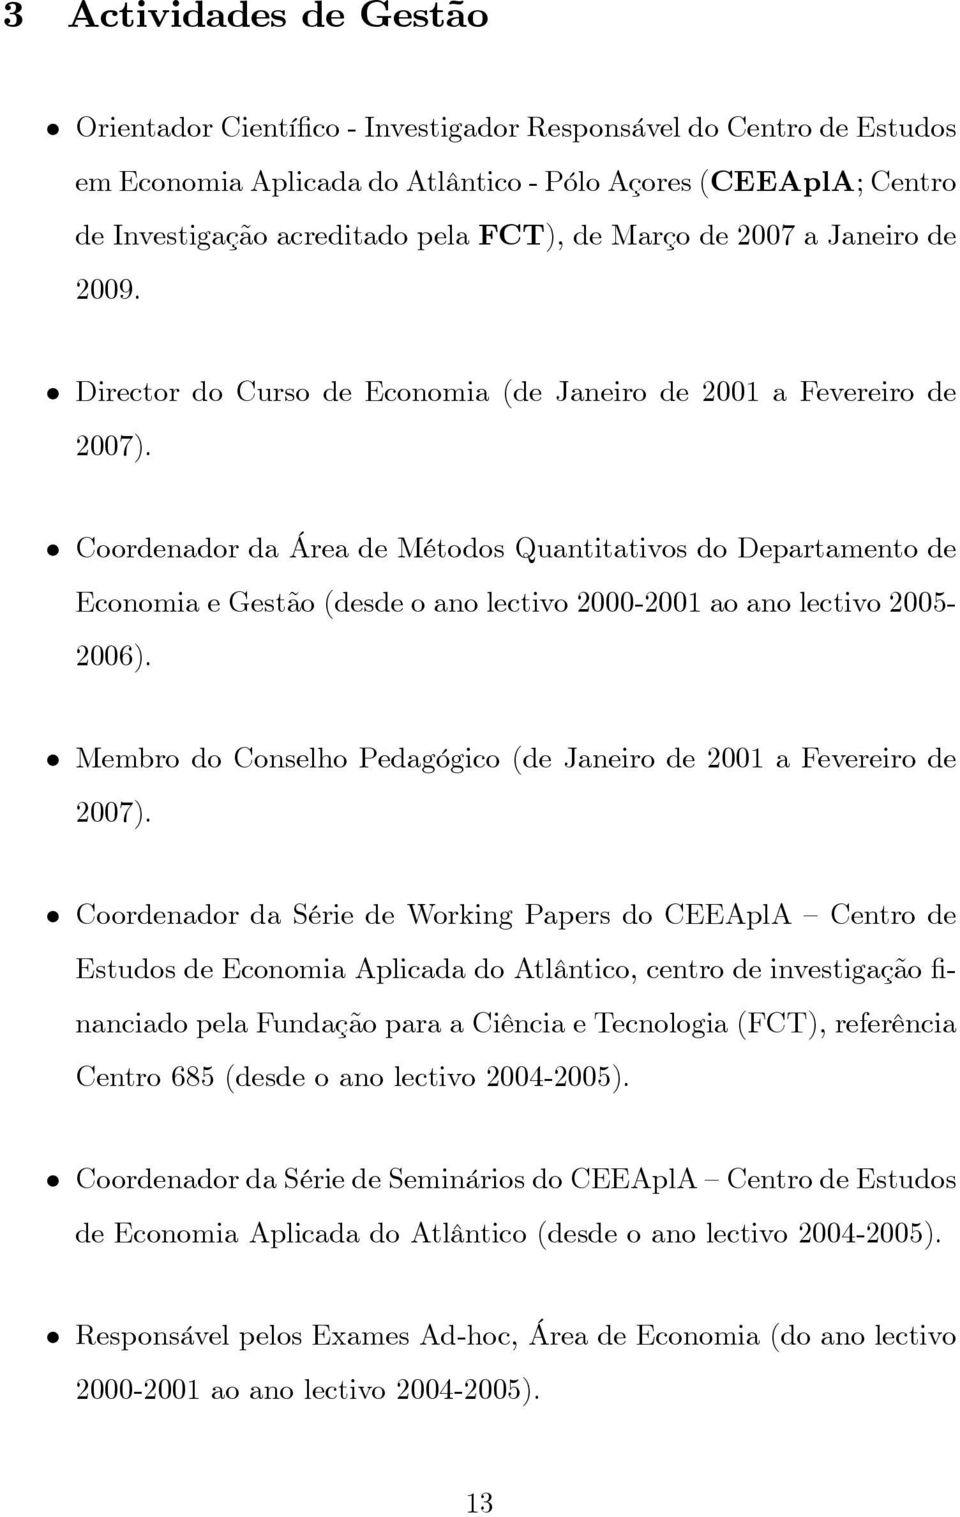 Coordenador da Área de Métodos Quantitativos do Departamento de Economia e Gestão (desde o ano lectivo 2000-2001 ao ano lectivo 2005-2006).